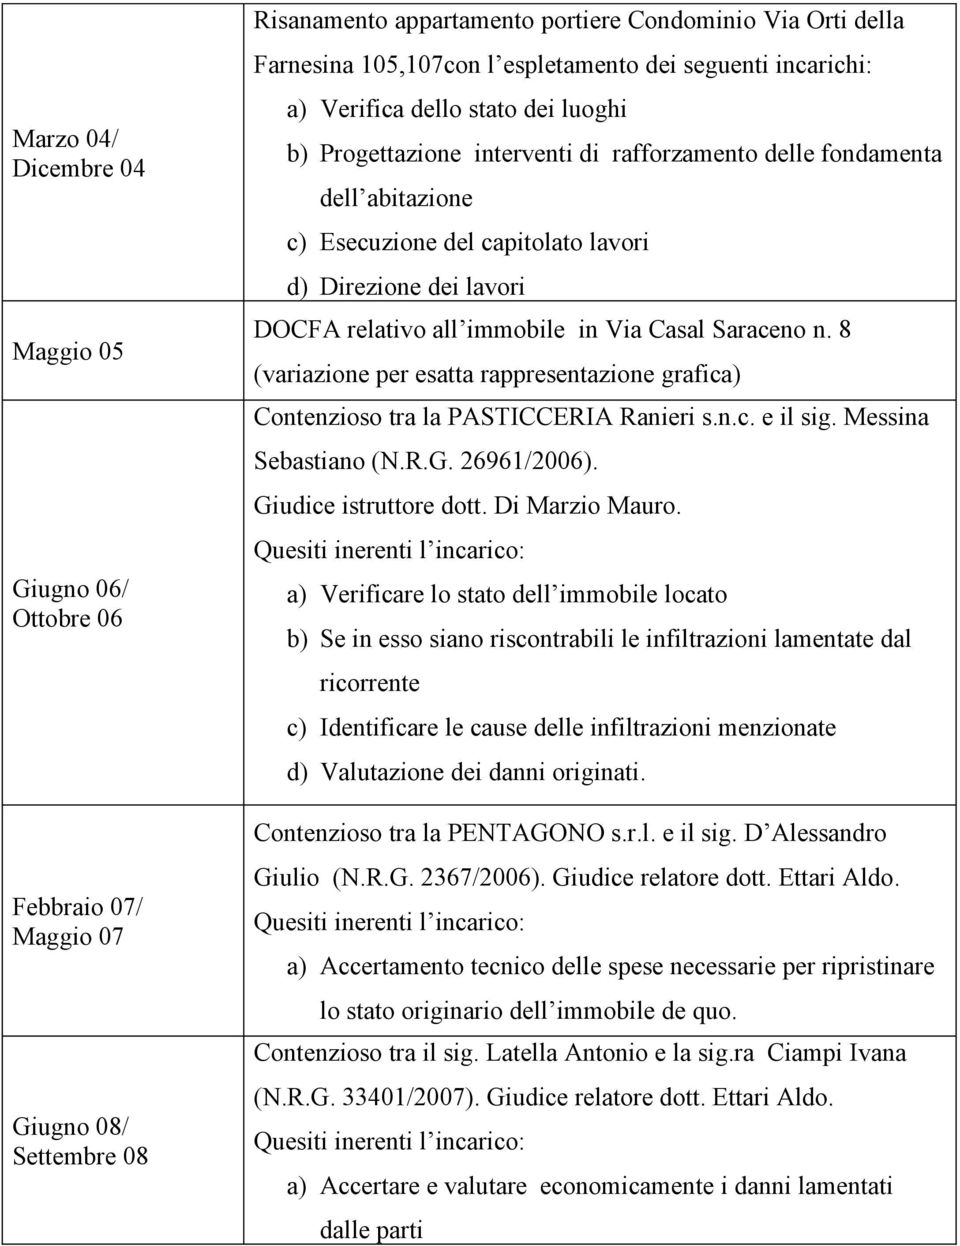 DOCFA relativo all immobile in Via Casal Saraceno n. 8 (variazione per esatta rappresentazione grafica) Contenzioso tra la PASTICCERIA Ranieri s.n.c. e il sig. Messina Sebastiano (N.R.G. 26961/2006).